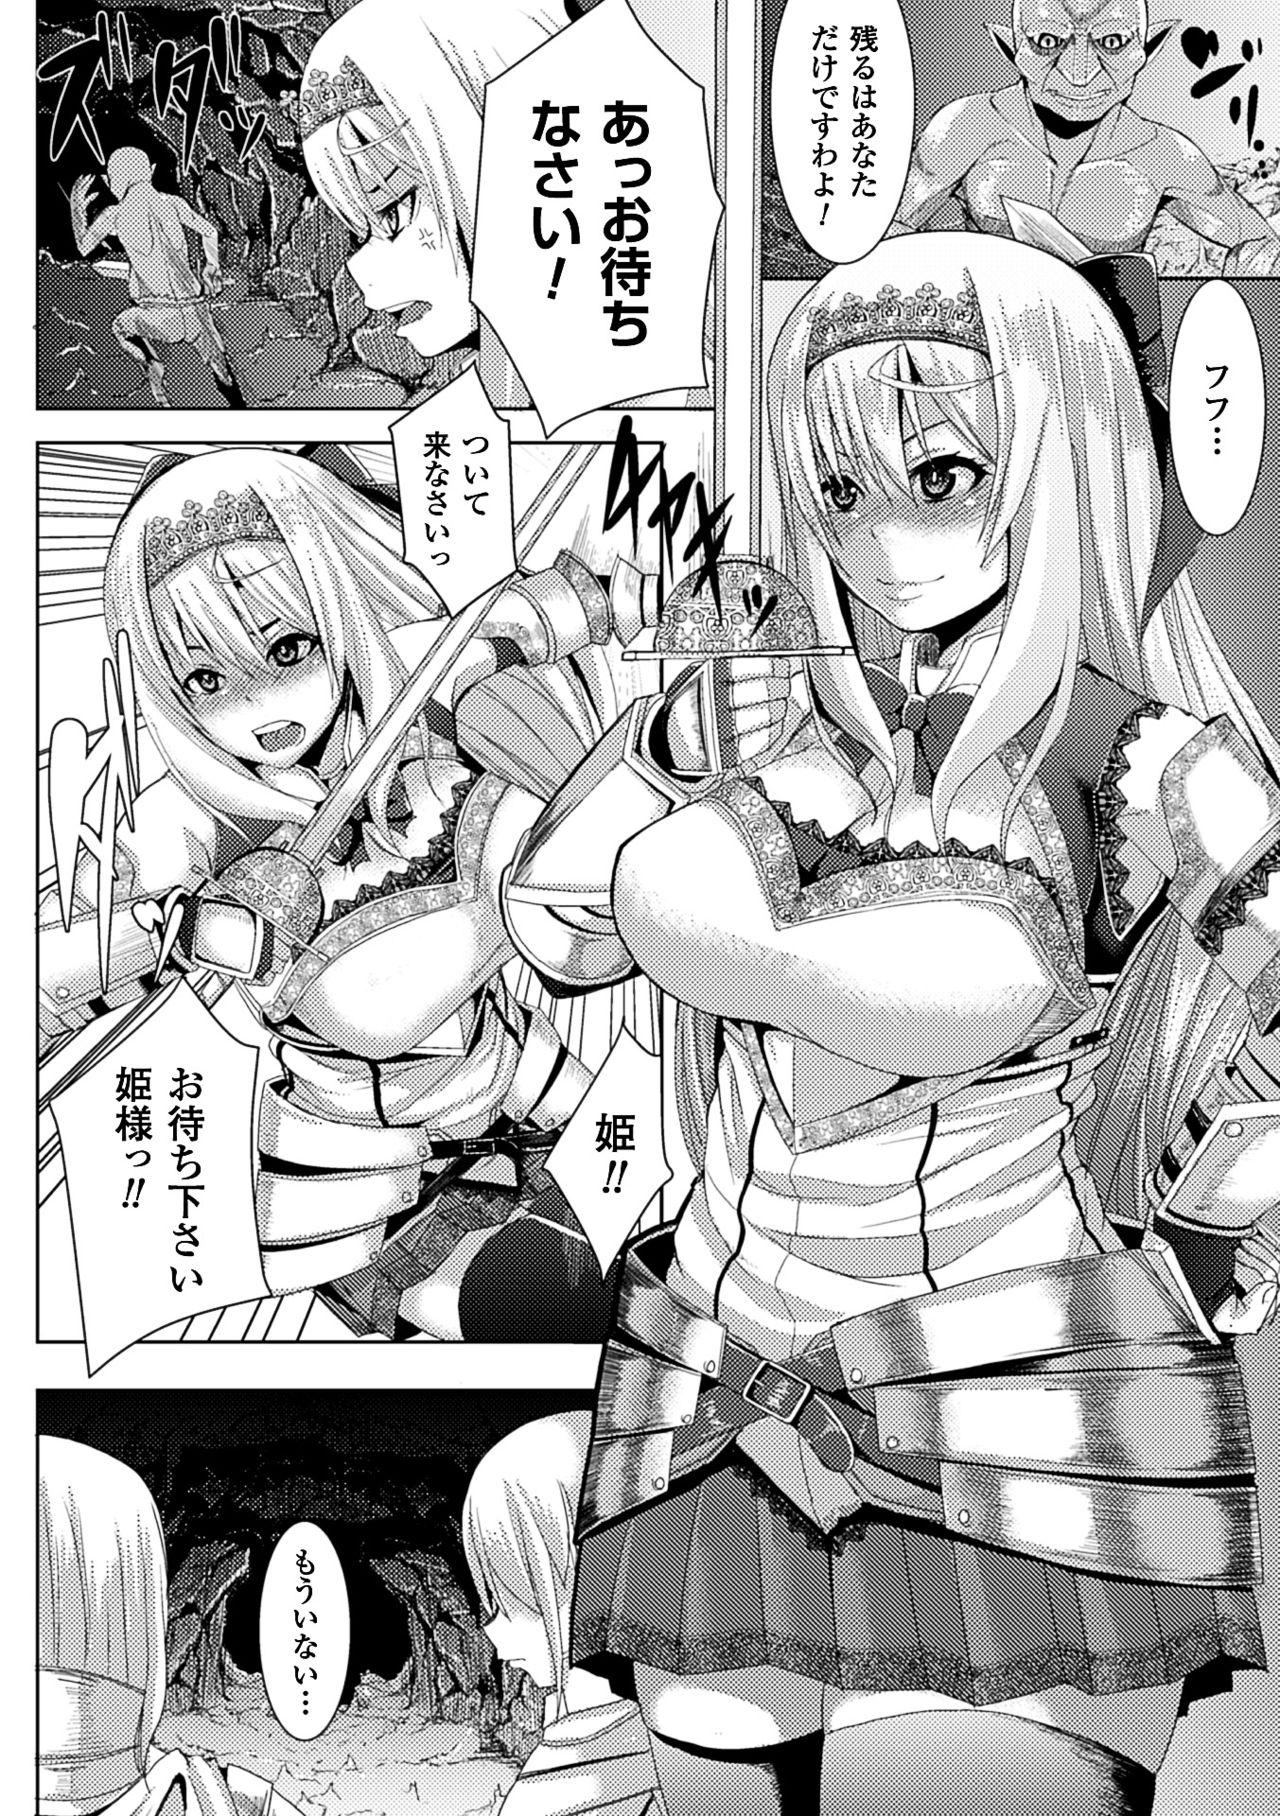 Deepthroat 2D Comic Magazine Kairaku Meikyuu Dungeon ni Kodama suru Mesu no Kyousei Vol. 1 Hot Blow Jobs - Page 5